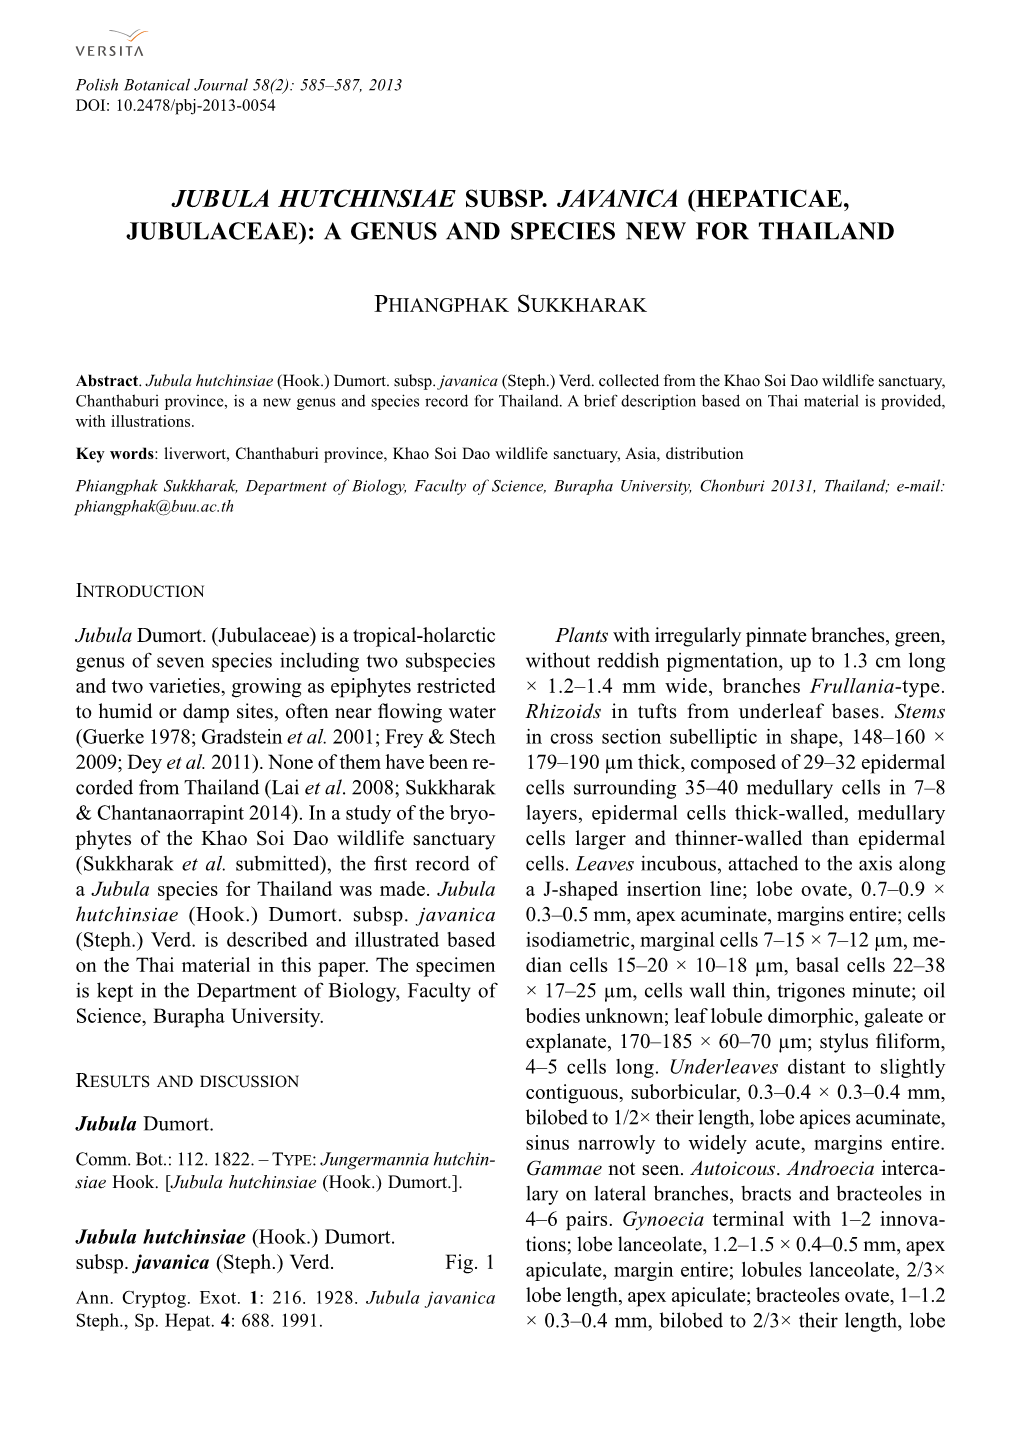 Jubula Hutchinsiae Subsp. Javanica (Hepaticae, Jubulaceae): a Genus and Species New for Thailand